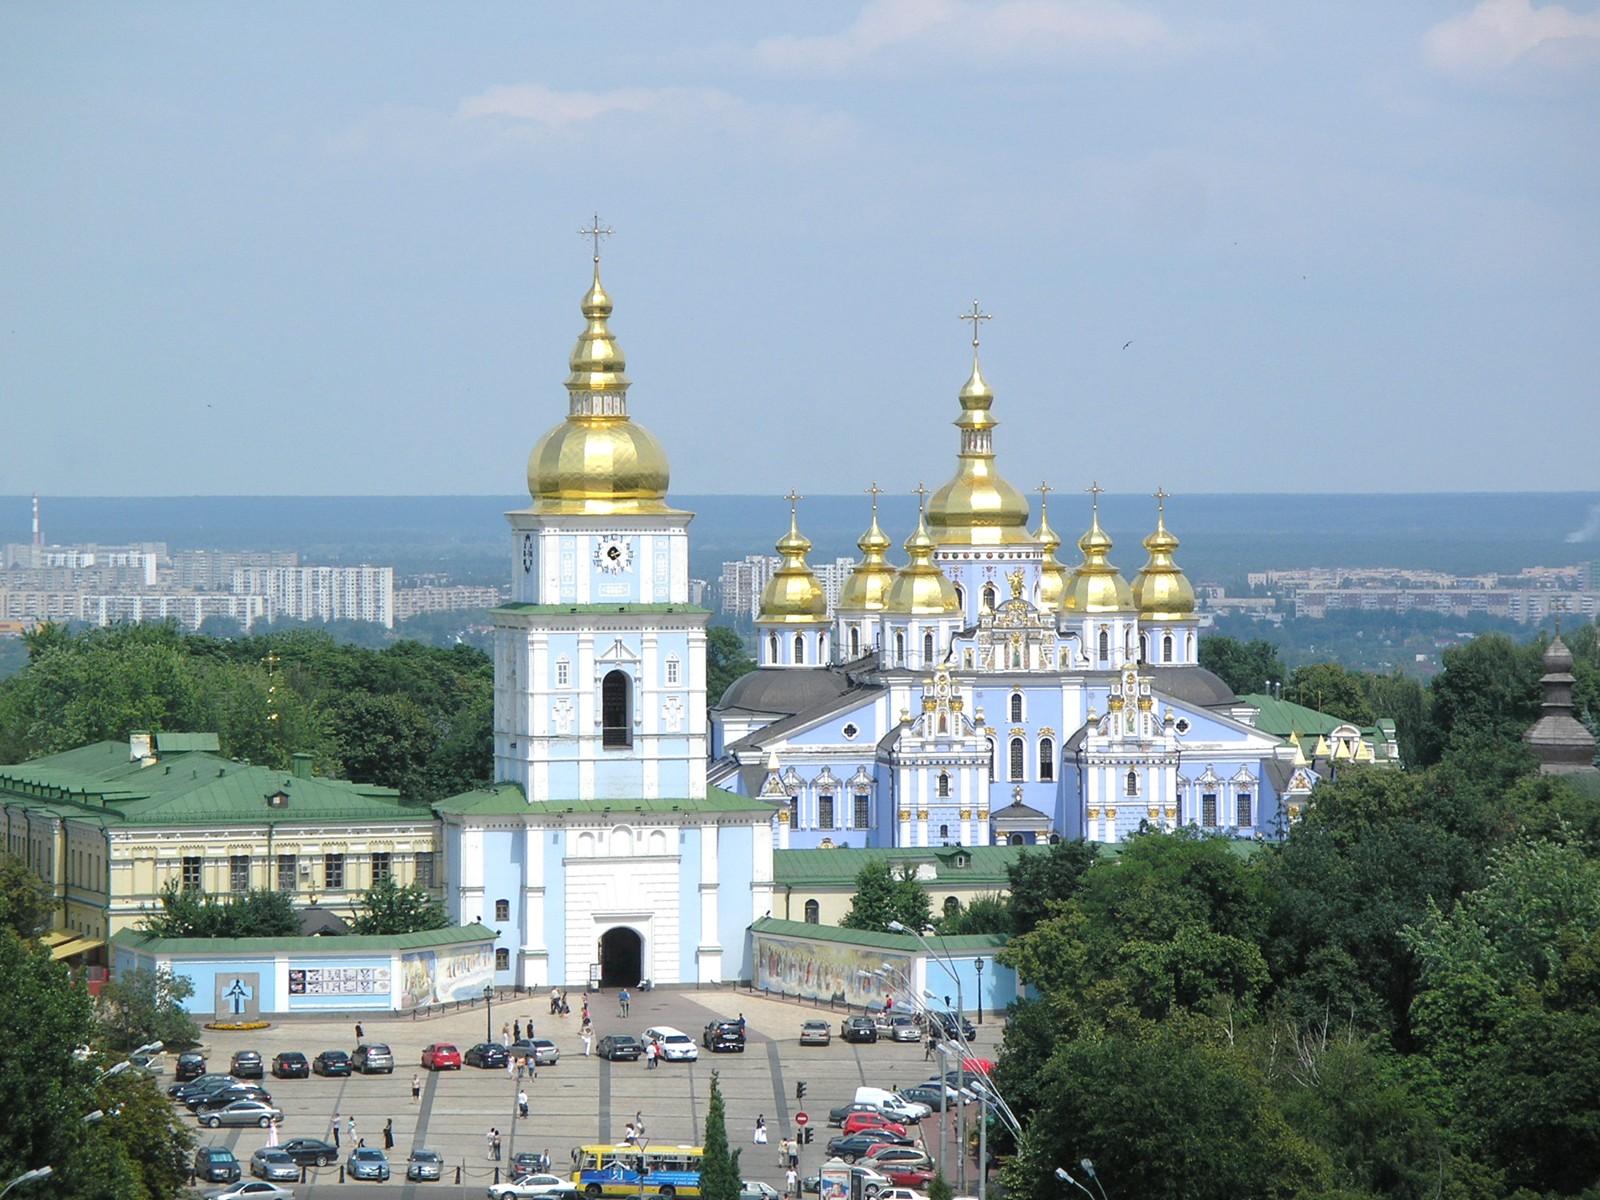 名所 史跡を訪ねて ウクライナ 世界遺産 キエフのペチェールシク大修道院など